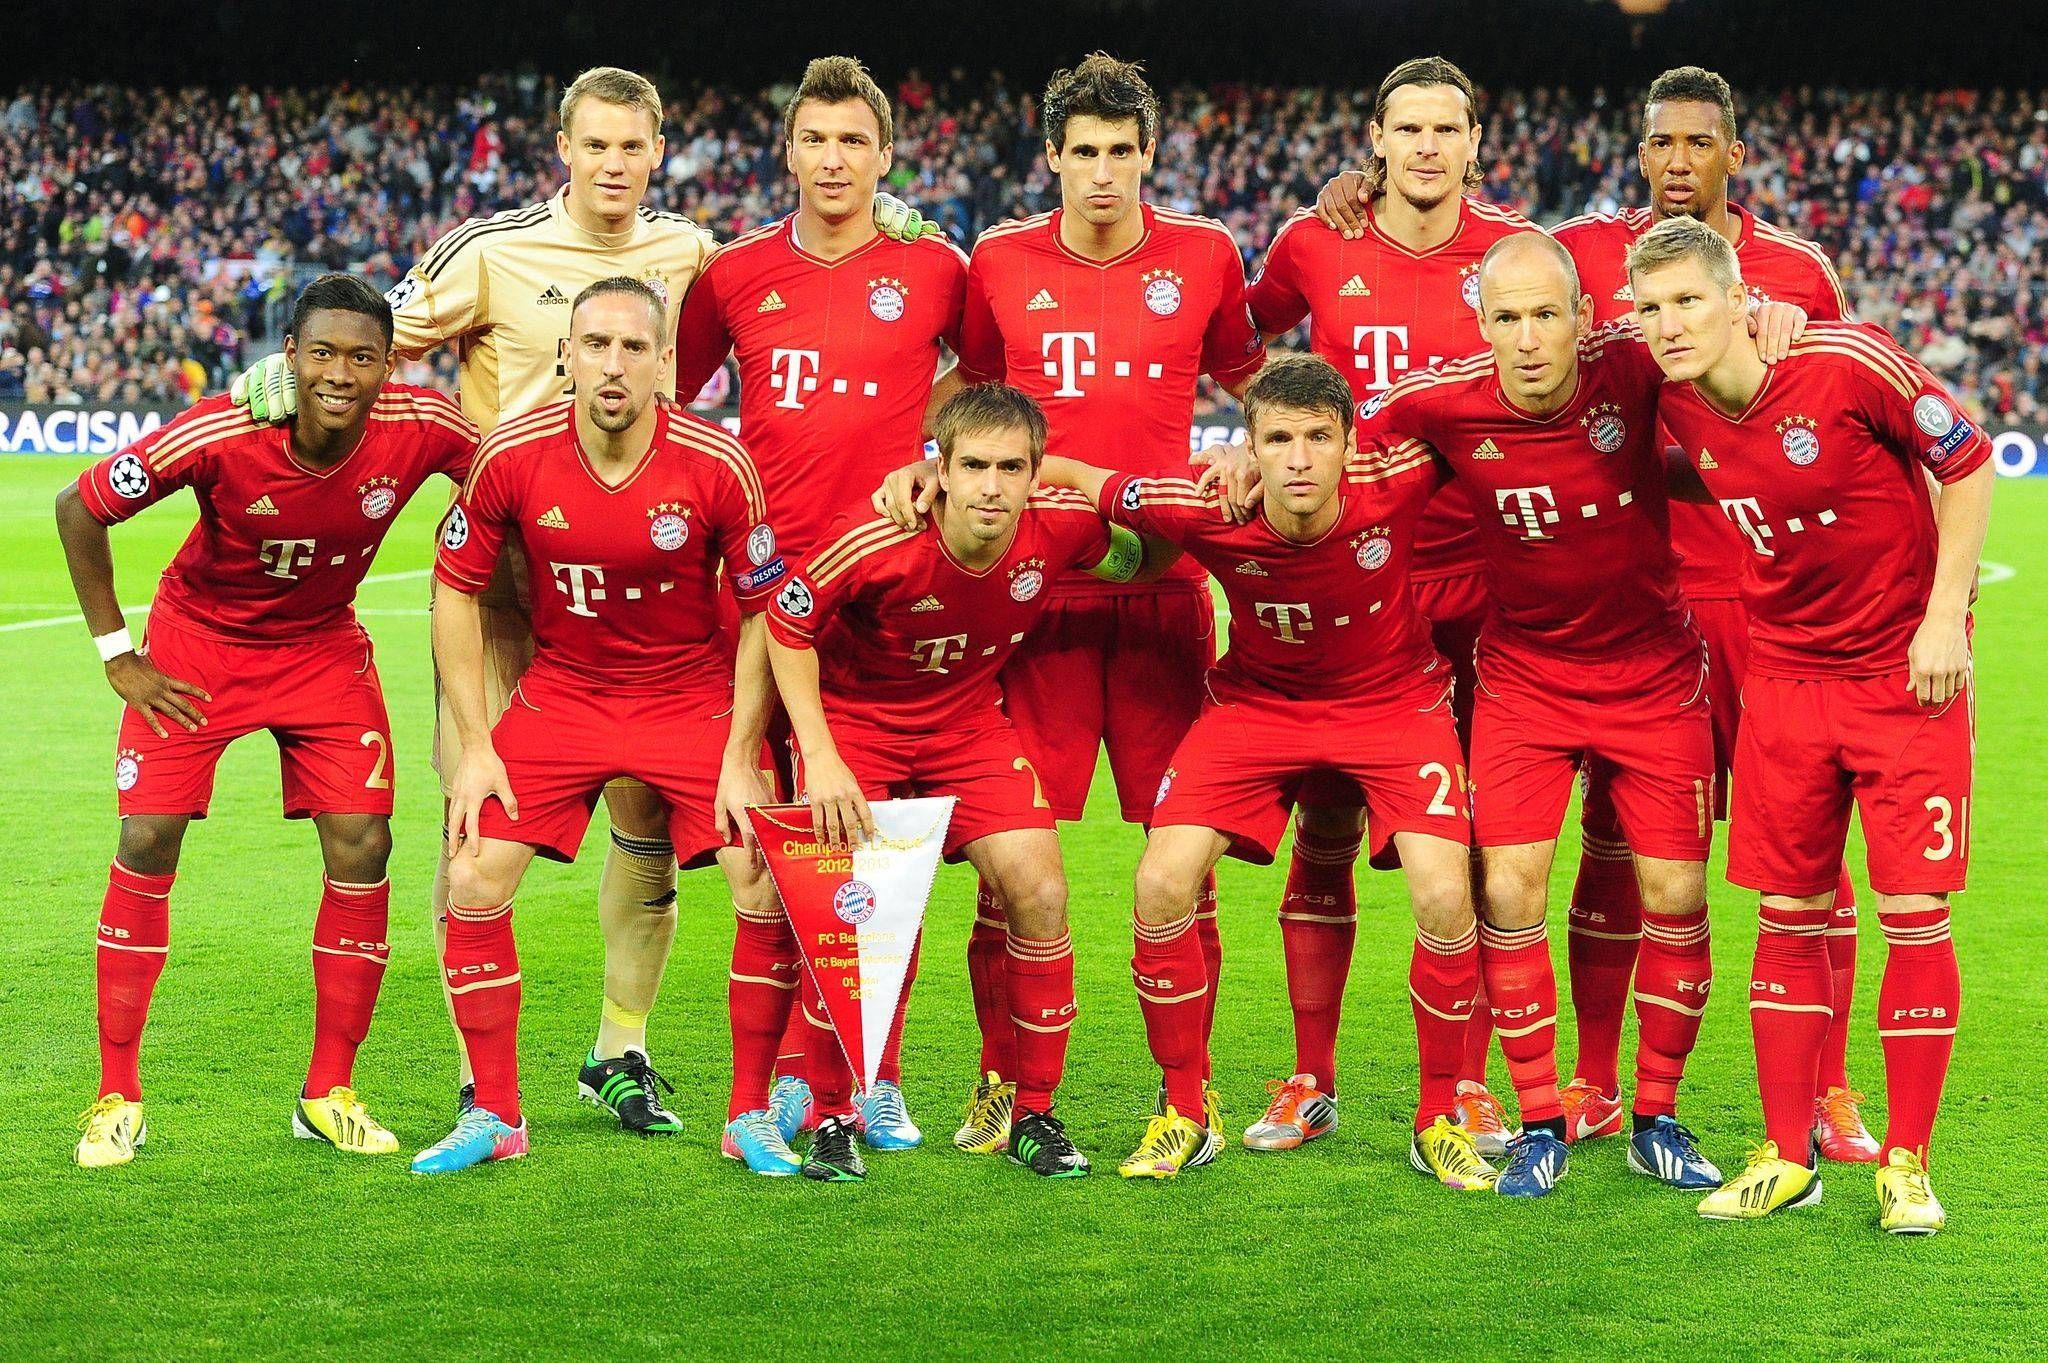 Bayern Munich Squad Wallpapers - Top Free Bayern Munich Squad